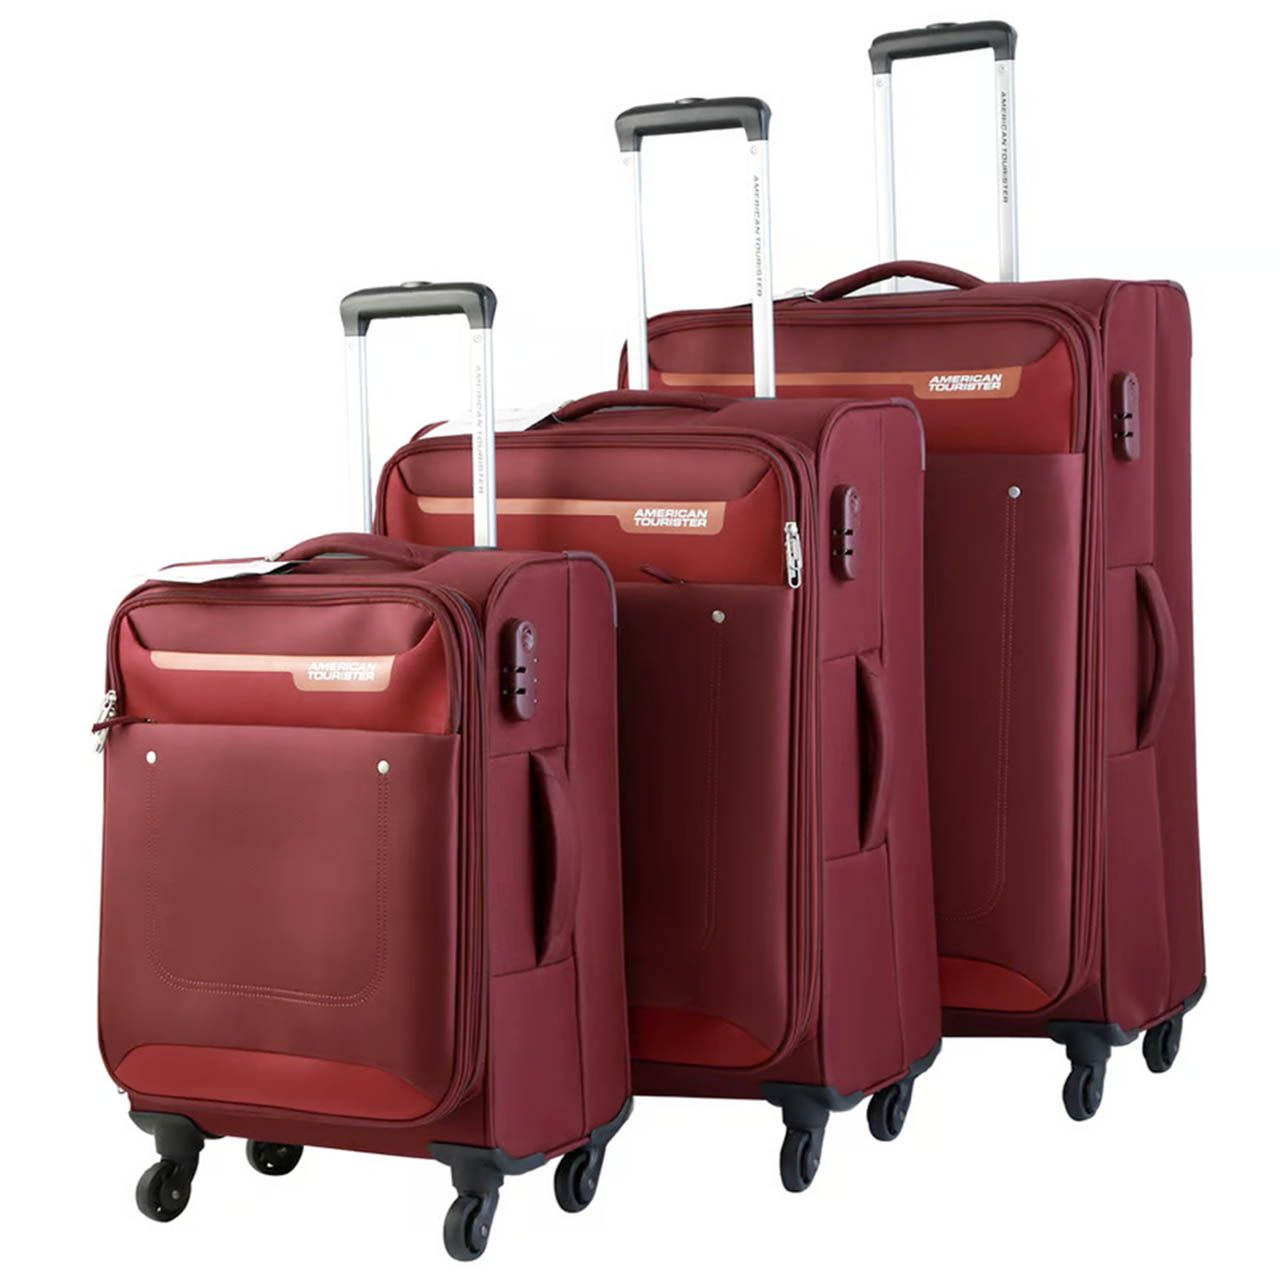 مجموعه سه عددی چمدان امریکن توریستر مدل JACKSON FP6 -  - 3